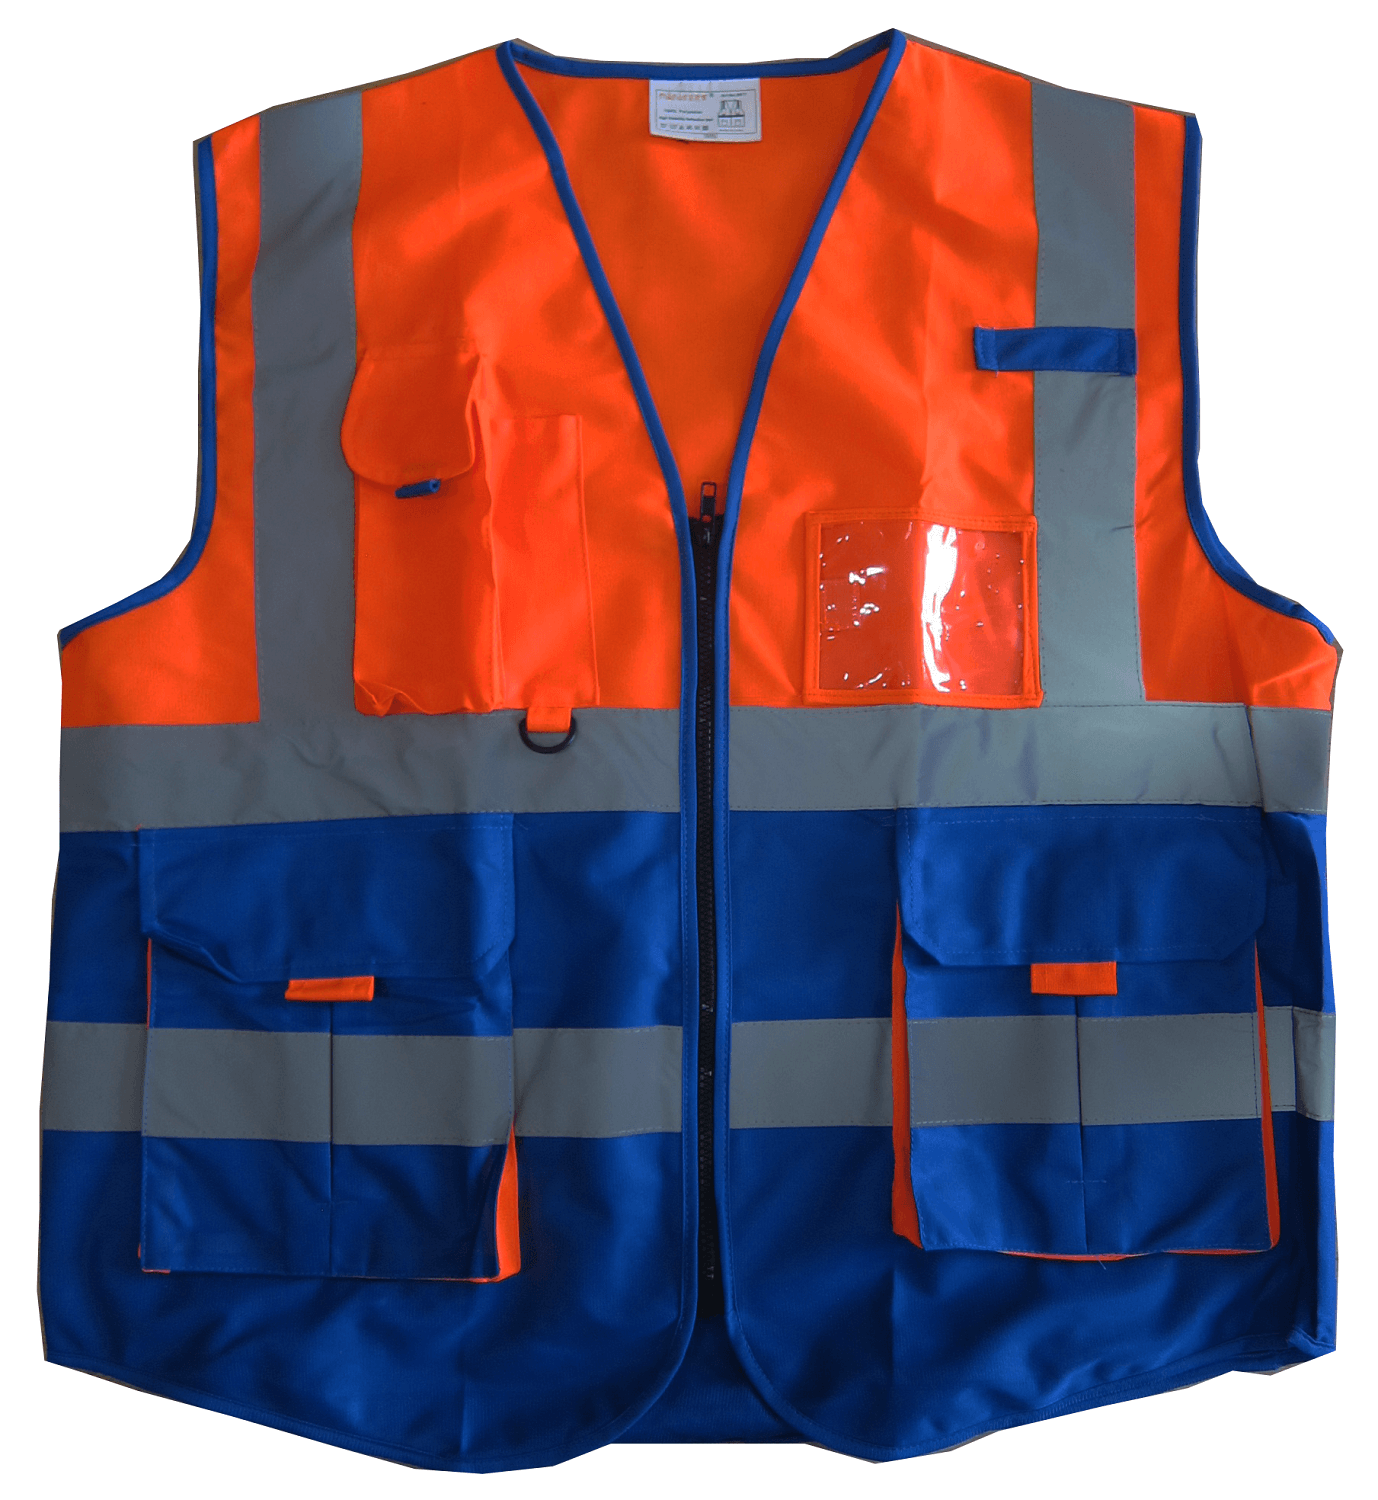  9977 Reflective Vest Dark Blue/Orange- High Visibility Vest with Zipper and Pocket